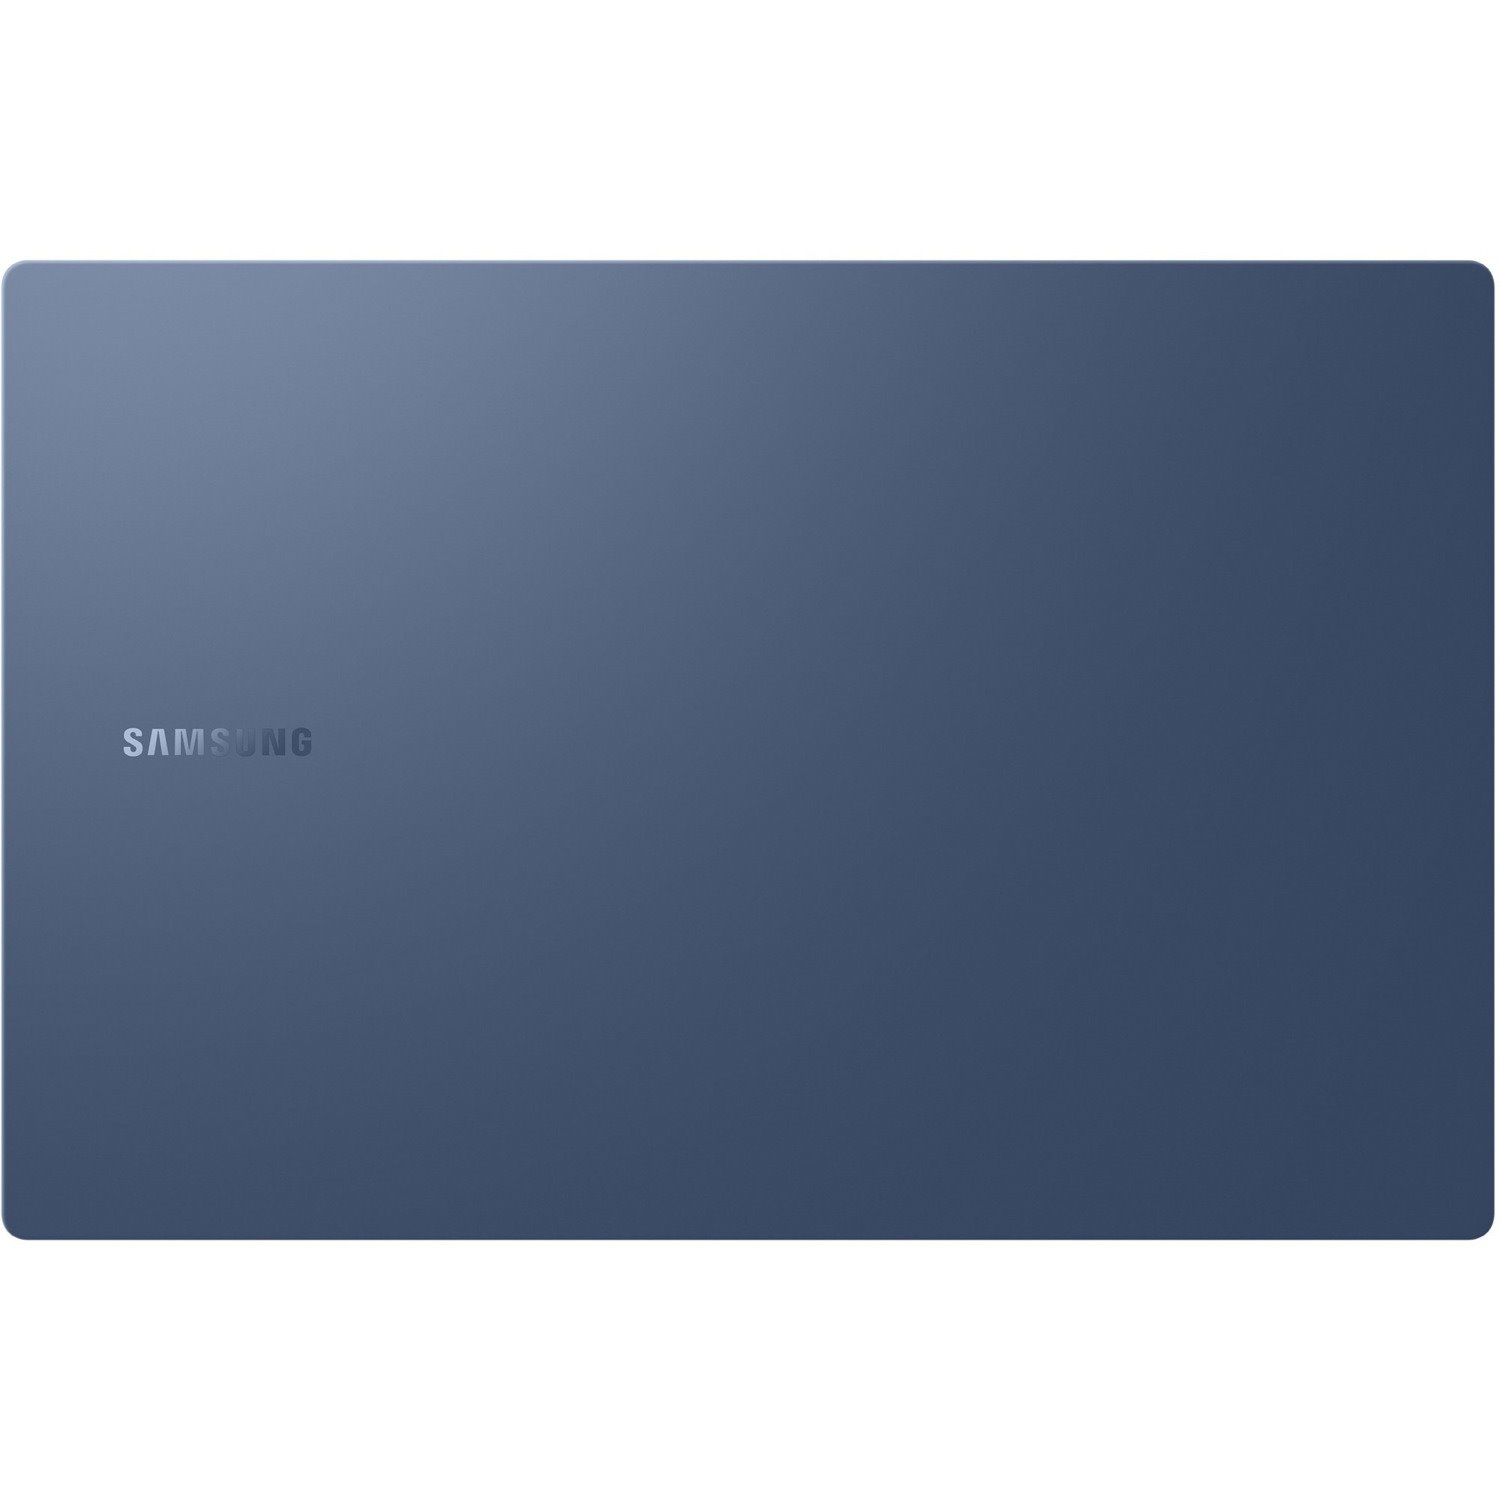 Samsung Galaxy Book Pro NP950XDB-KC2CA 15.6" Notebook - Full HD - 1920 x 1080 - Intel Core i5 11th Gen i5-1135G7 2.40 GHz - Intel Evo Platform - 8 GB Total RAM - 8 GB On-board Memory - 256 GB SSD - Mystic Blue